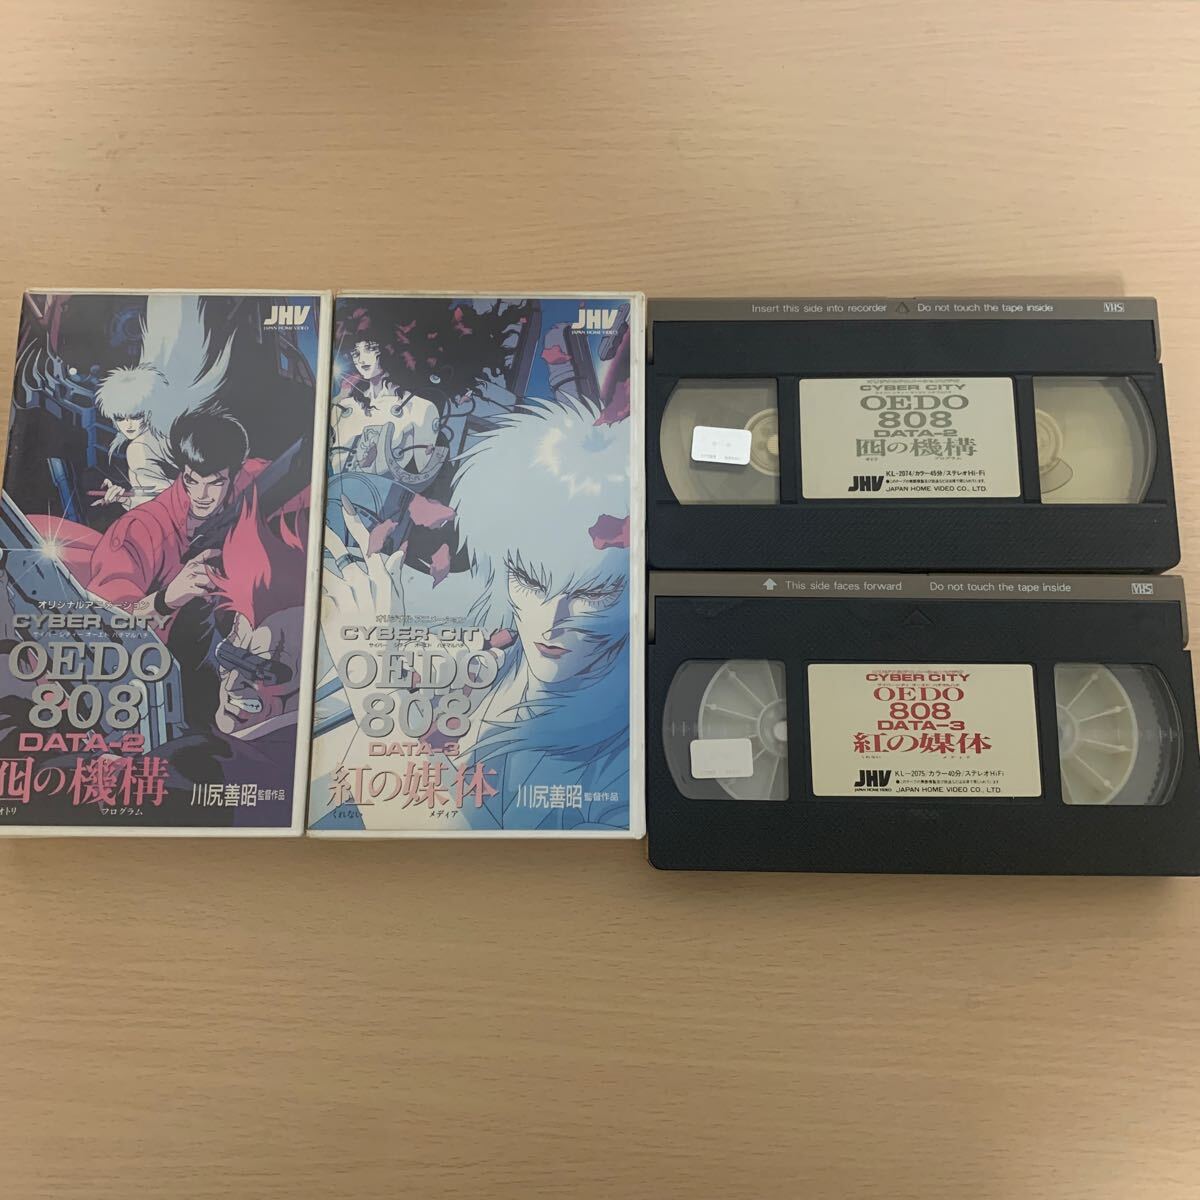 サイバーシティ オーエド808 VHS ビデオテープ 2本セット_画像5